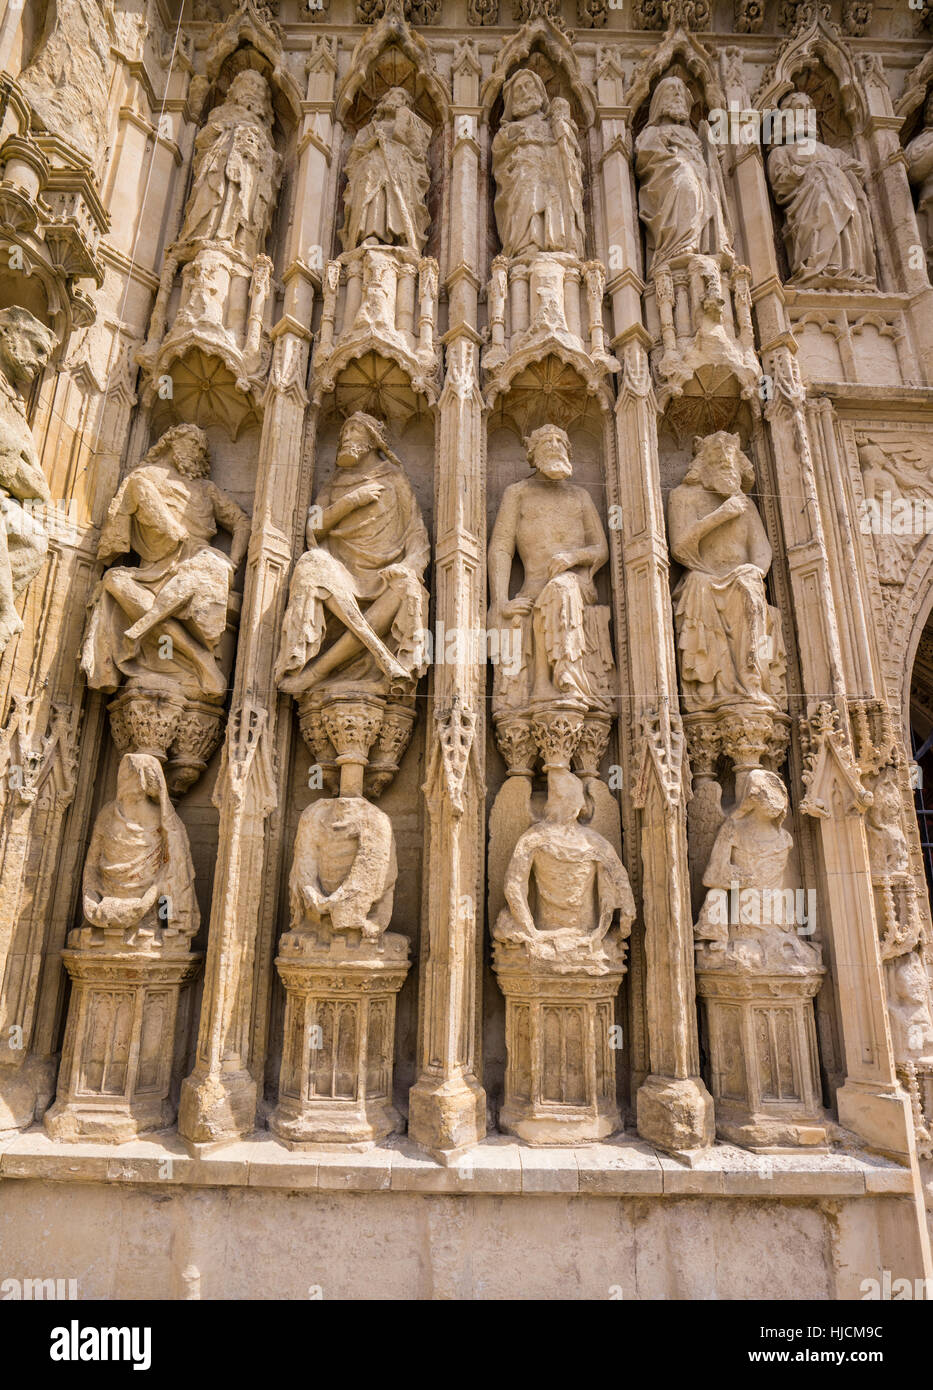 Großbritannien, Südwest-England, Devon, Exeter, Kathedrale von Exeter, erarbeiten Steinmetzarbeiten von Engeln, Heiligen, biblischen Figuren und Könige Stockfoto